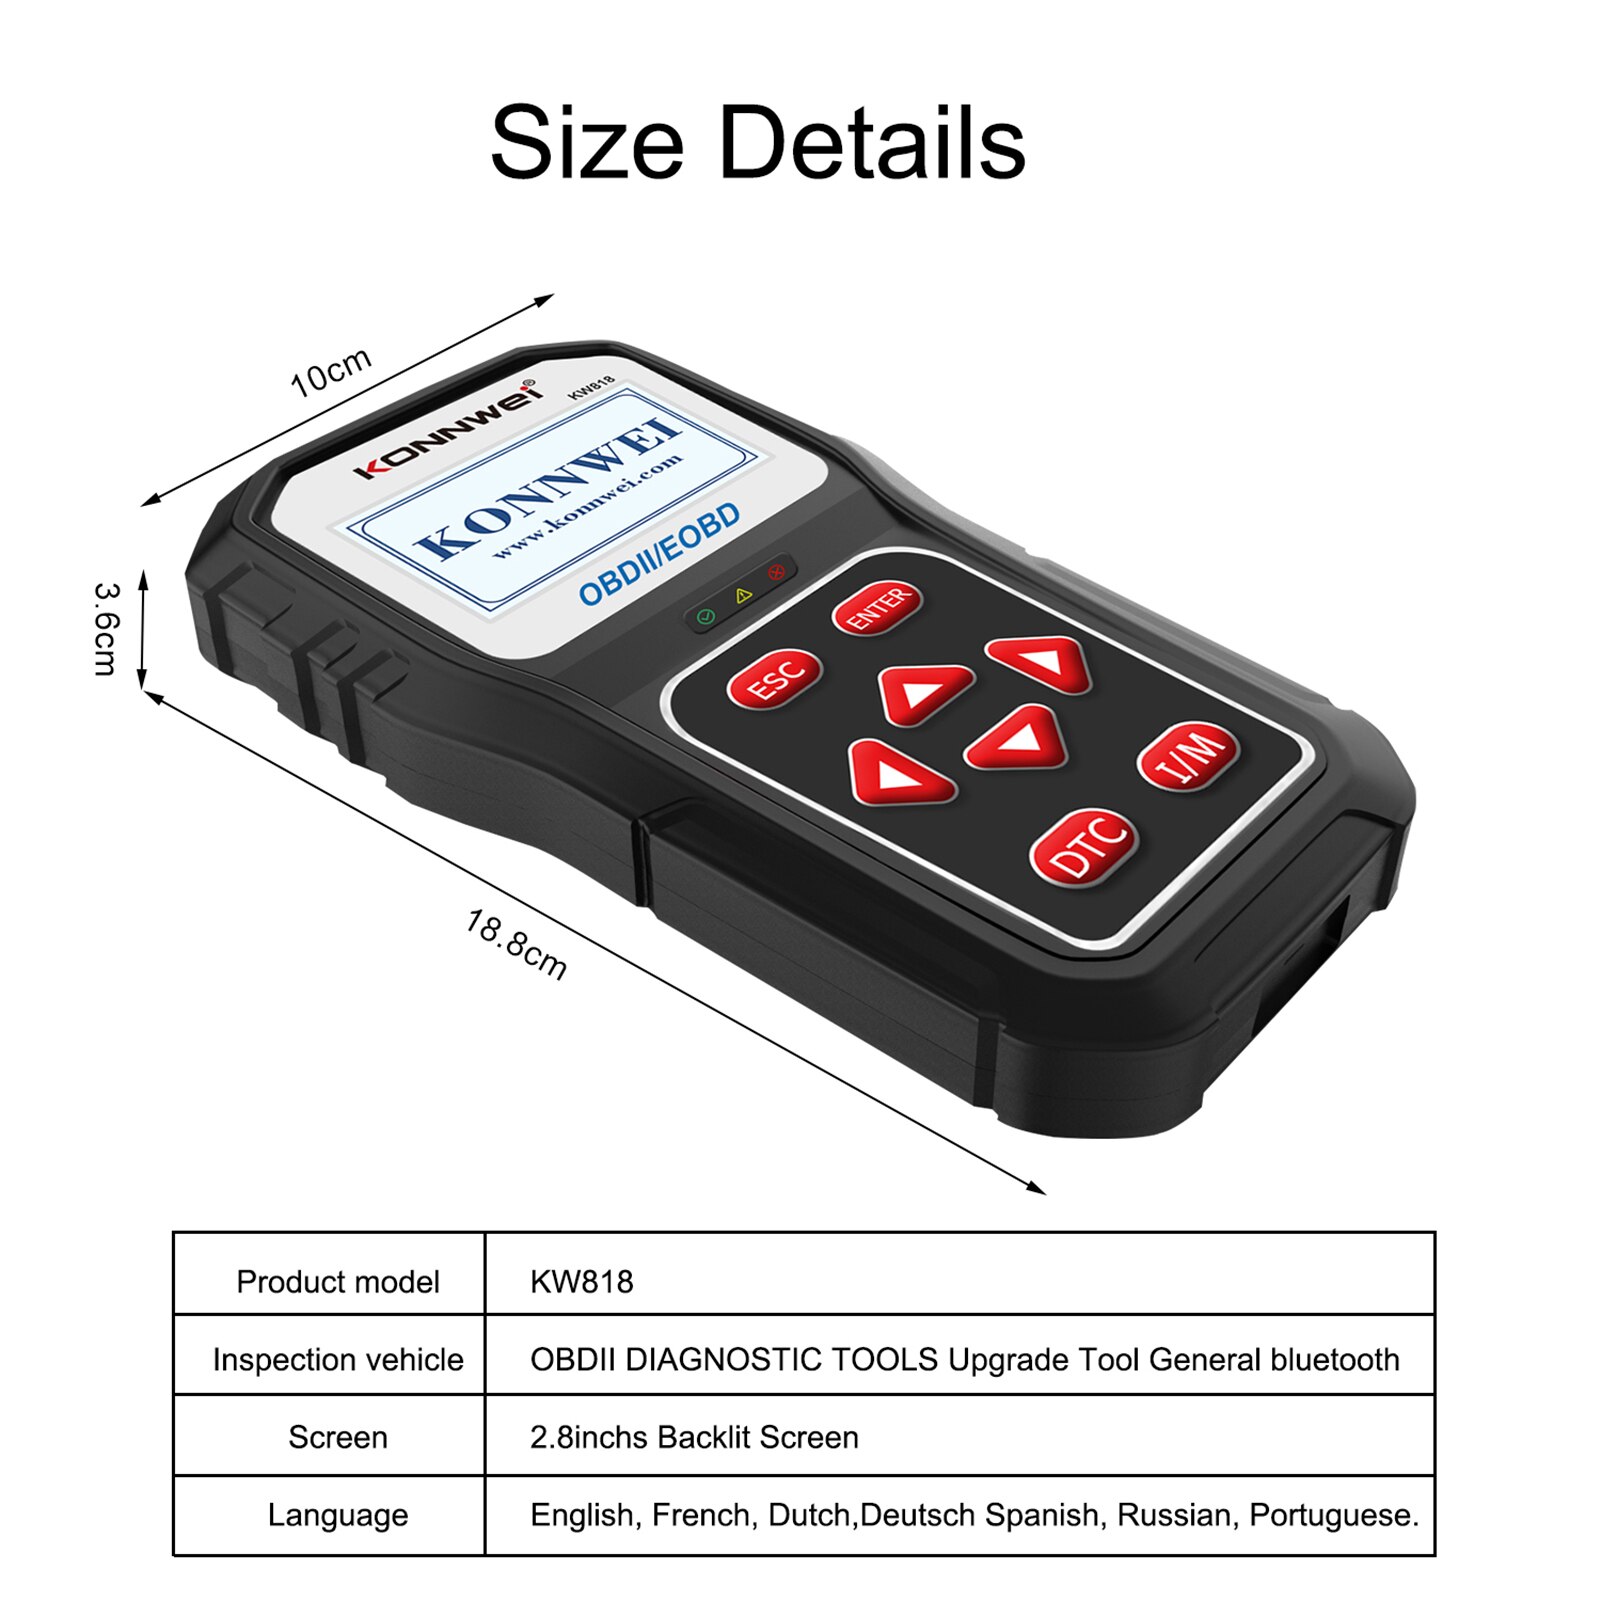 Konnwei kw818 obd2 herramienta de diagnóstico de vehículos de escaneo Código automático lector de baterías probador de baterías para comprobar la actualización Bluetooth del lector de código de falla del motor